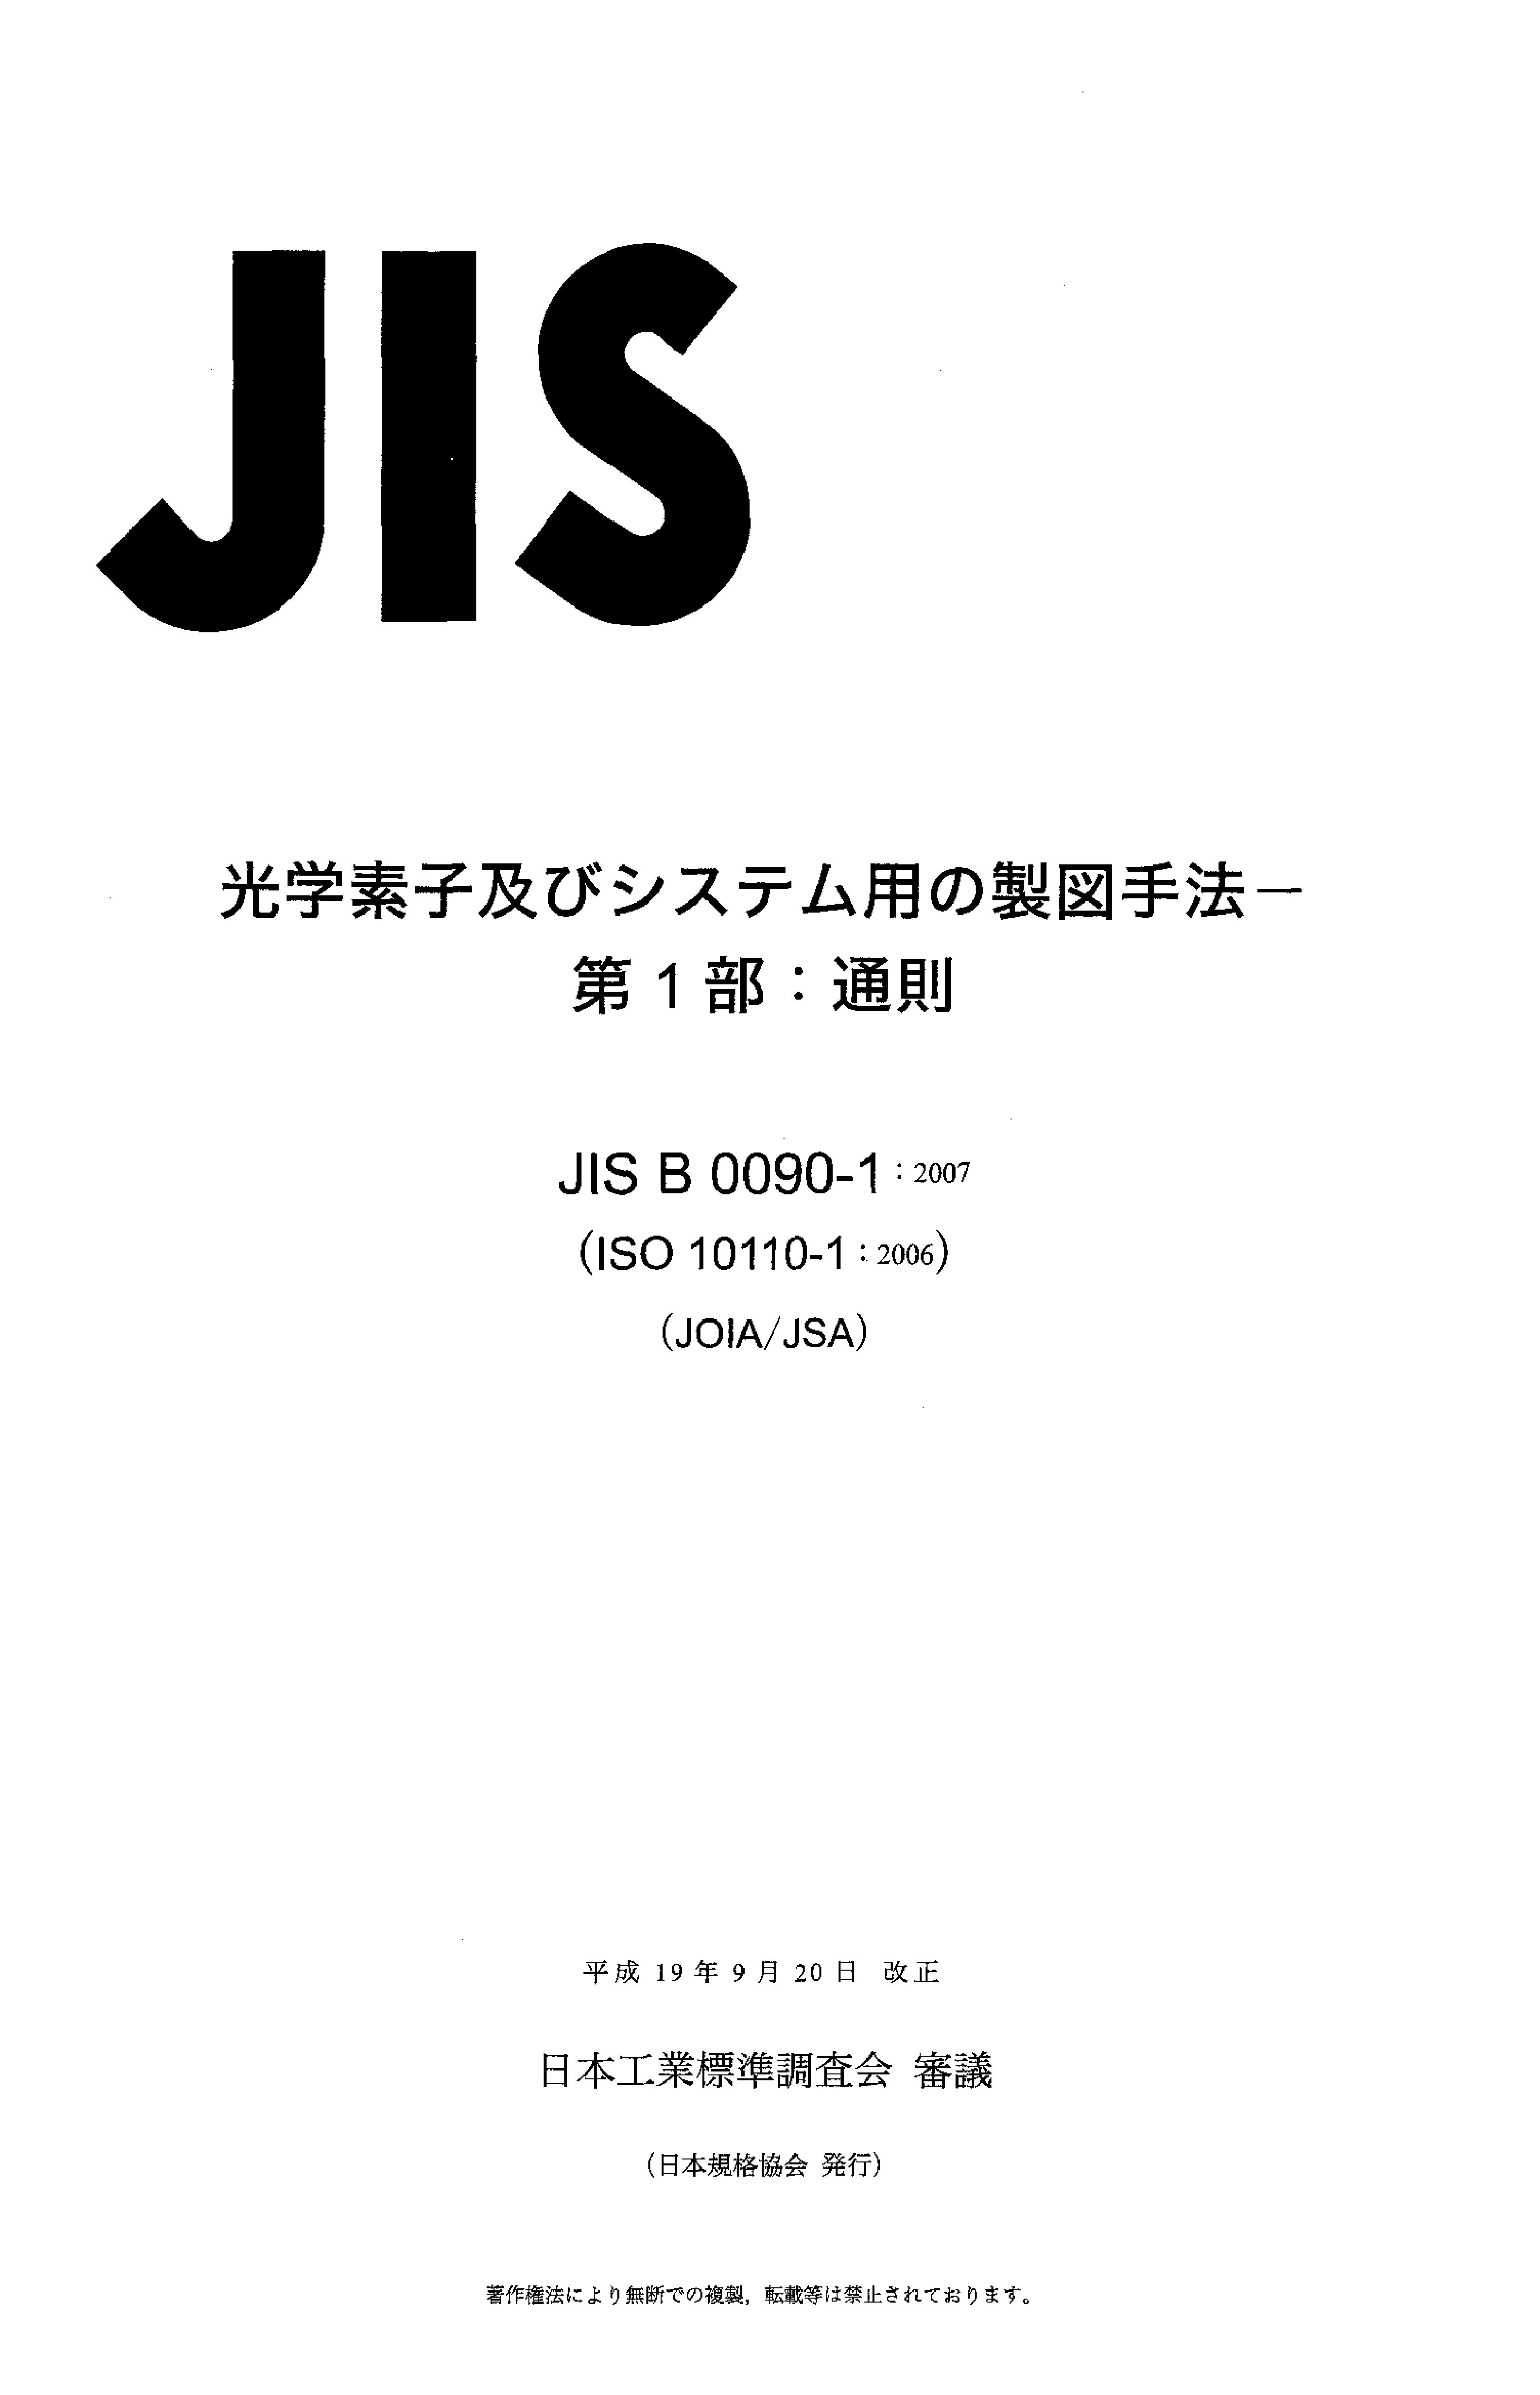 JIS B 0090-1:2007封面图